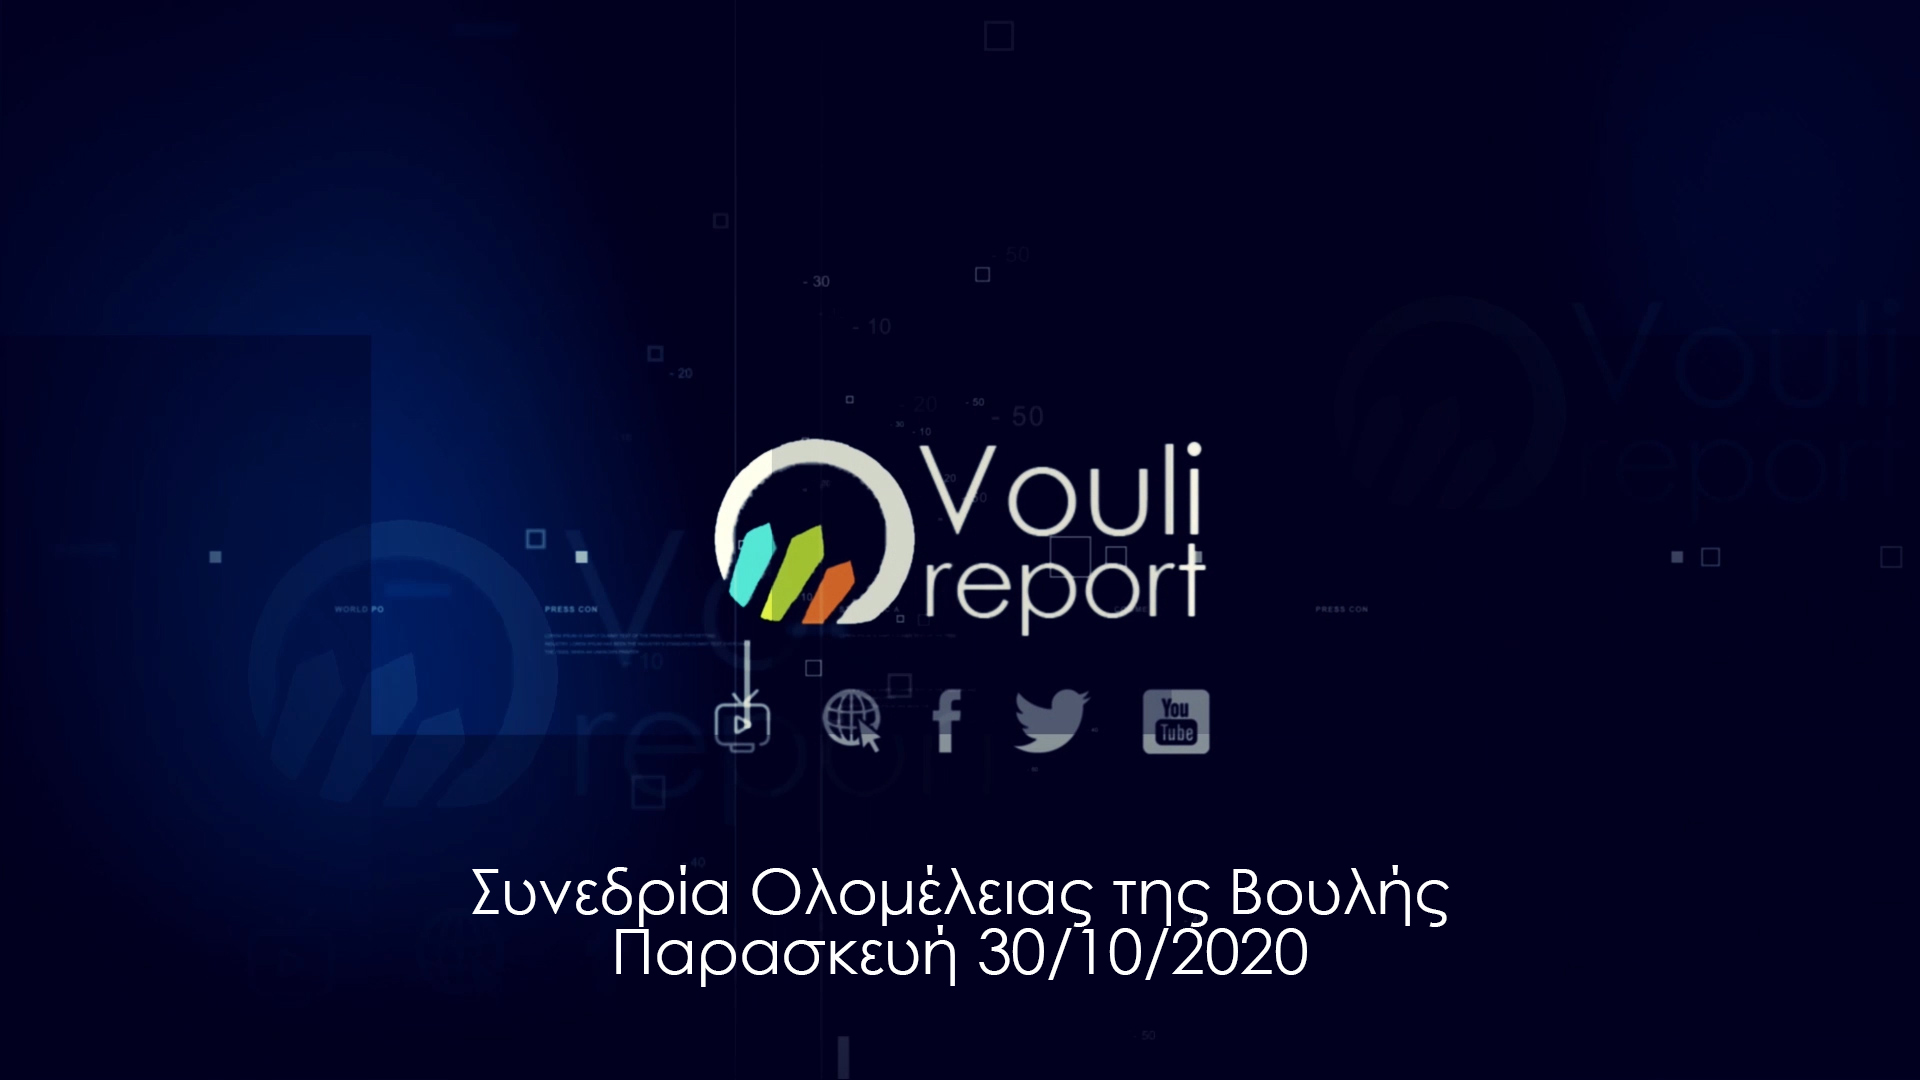 Vouli report | Συνεδρία Ολομέλειας της Βουλής - Παρασκευή 30/10/2020